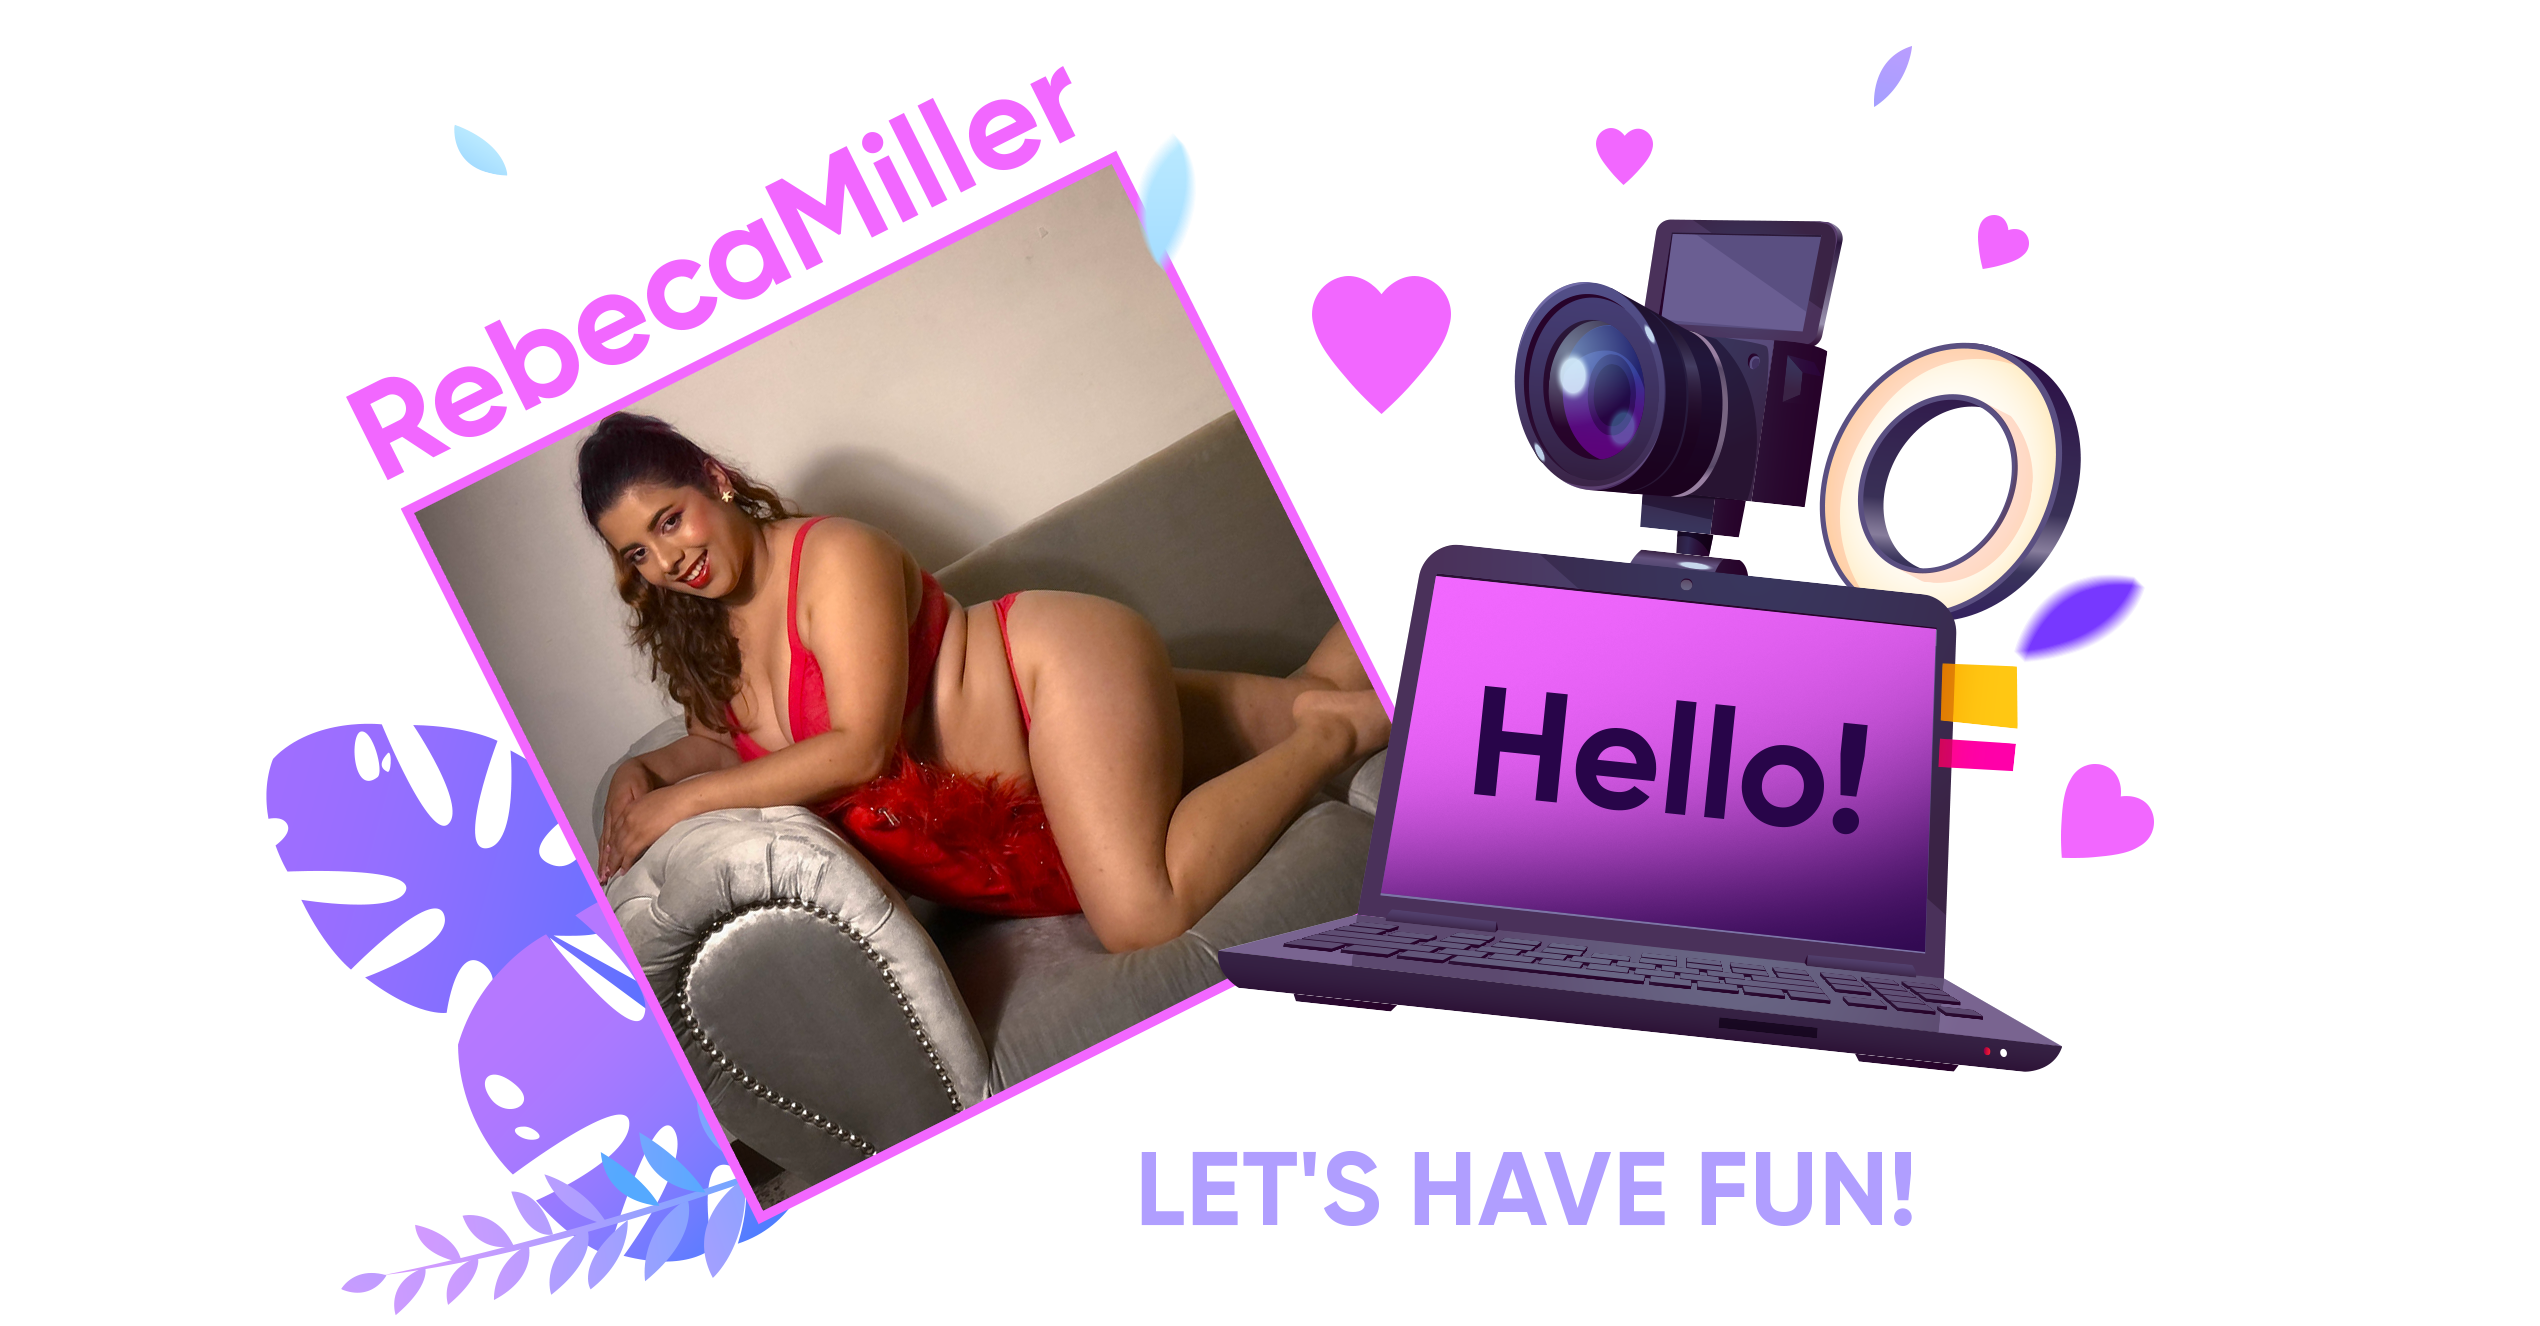 RebecaMiller Hi, darling. I'm sweet baby! Let's have fun! image: 1